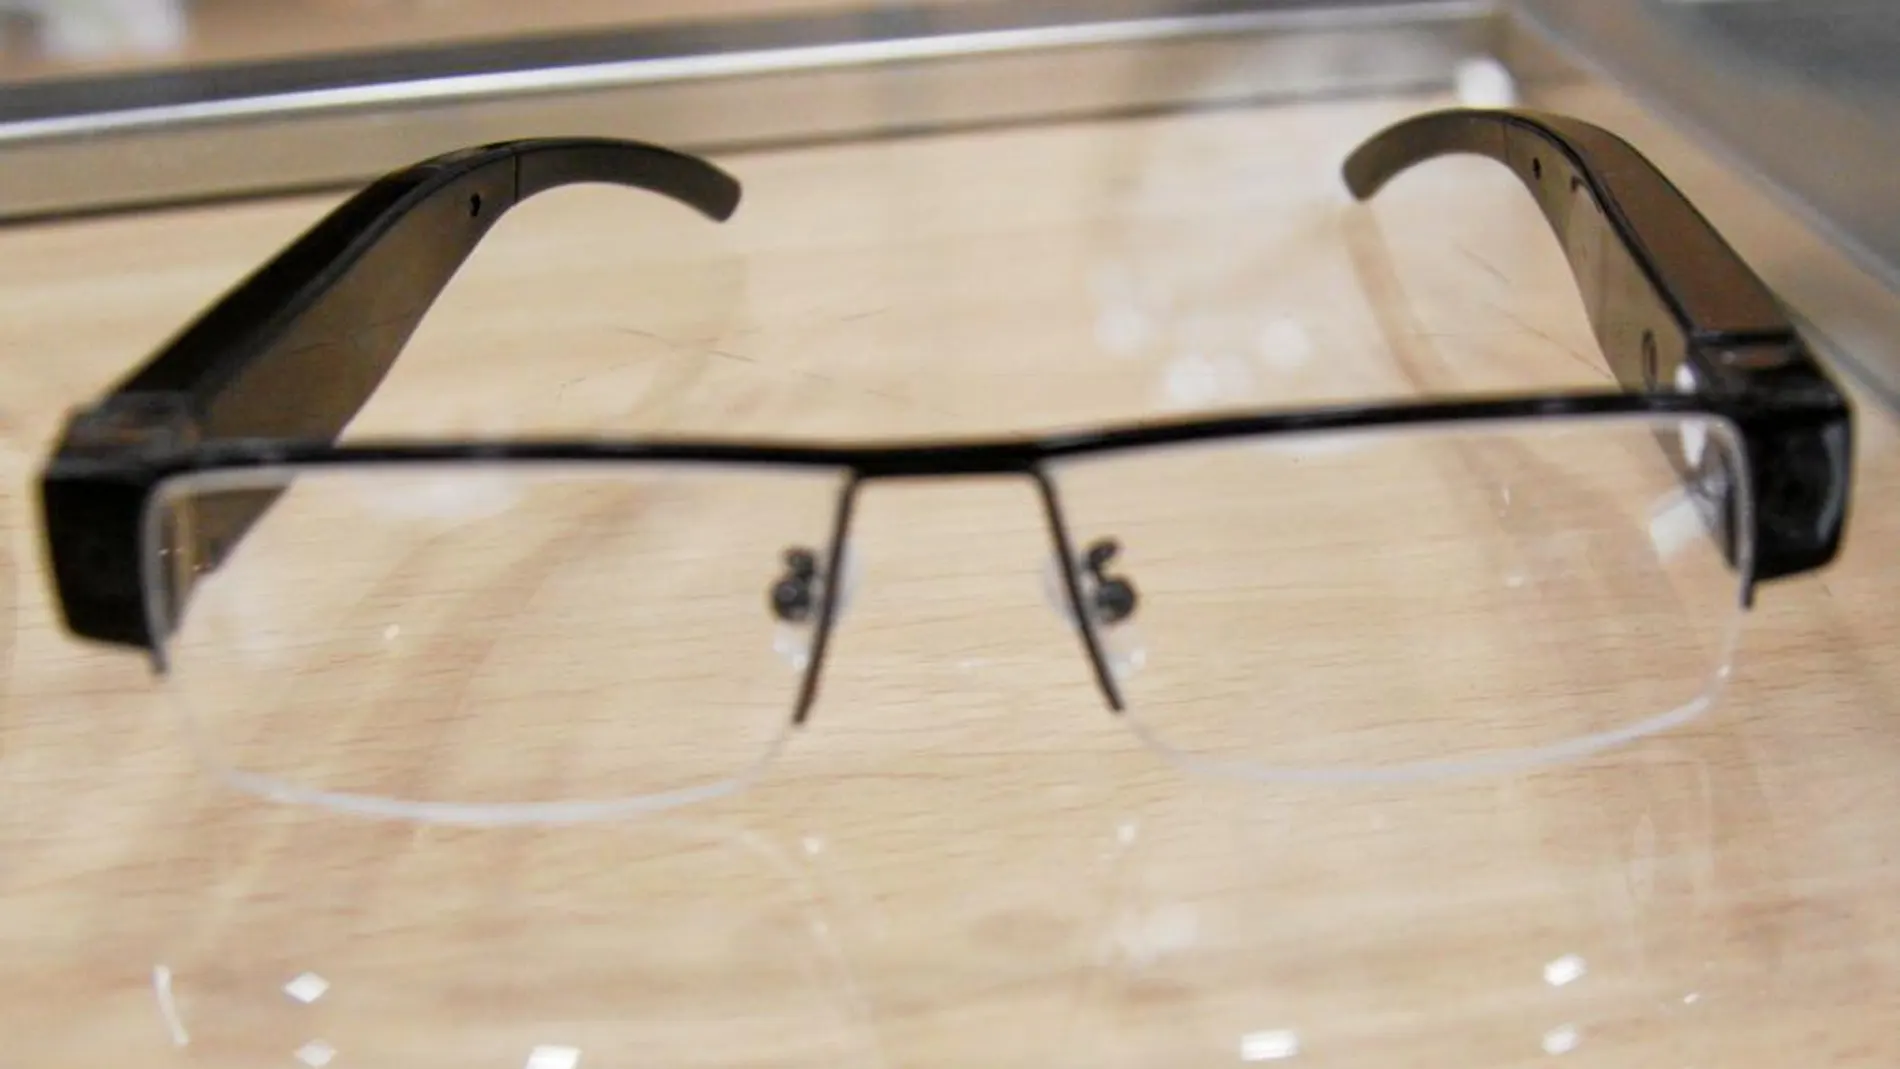 Unas gafas espía con cámara oculta, la opción más factible para